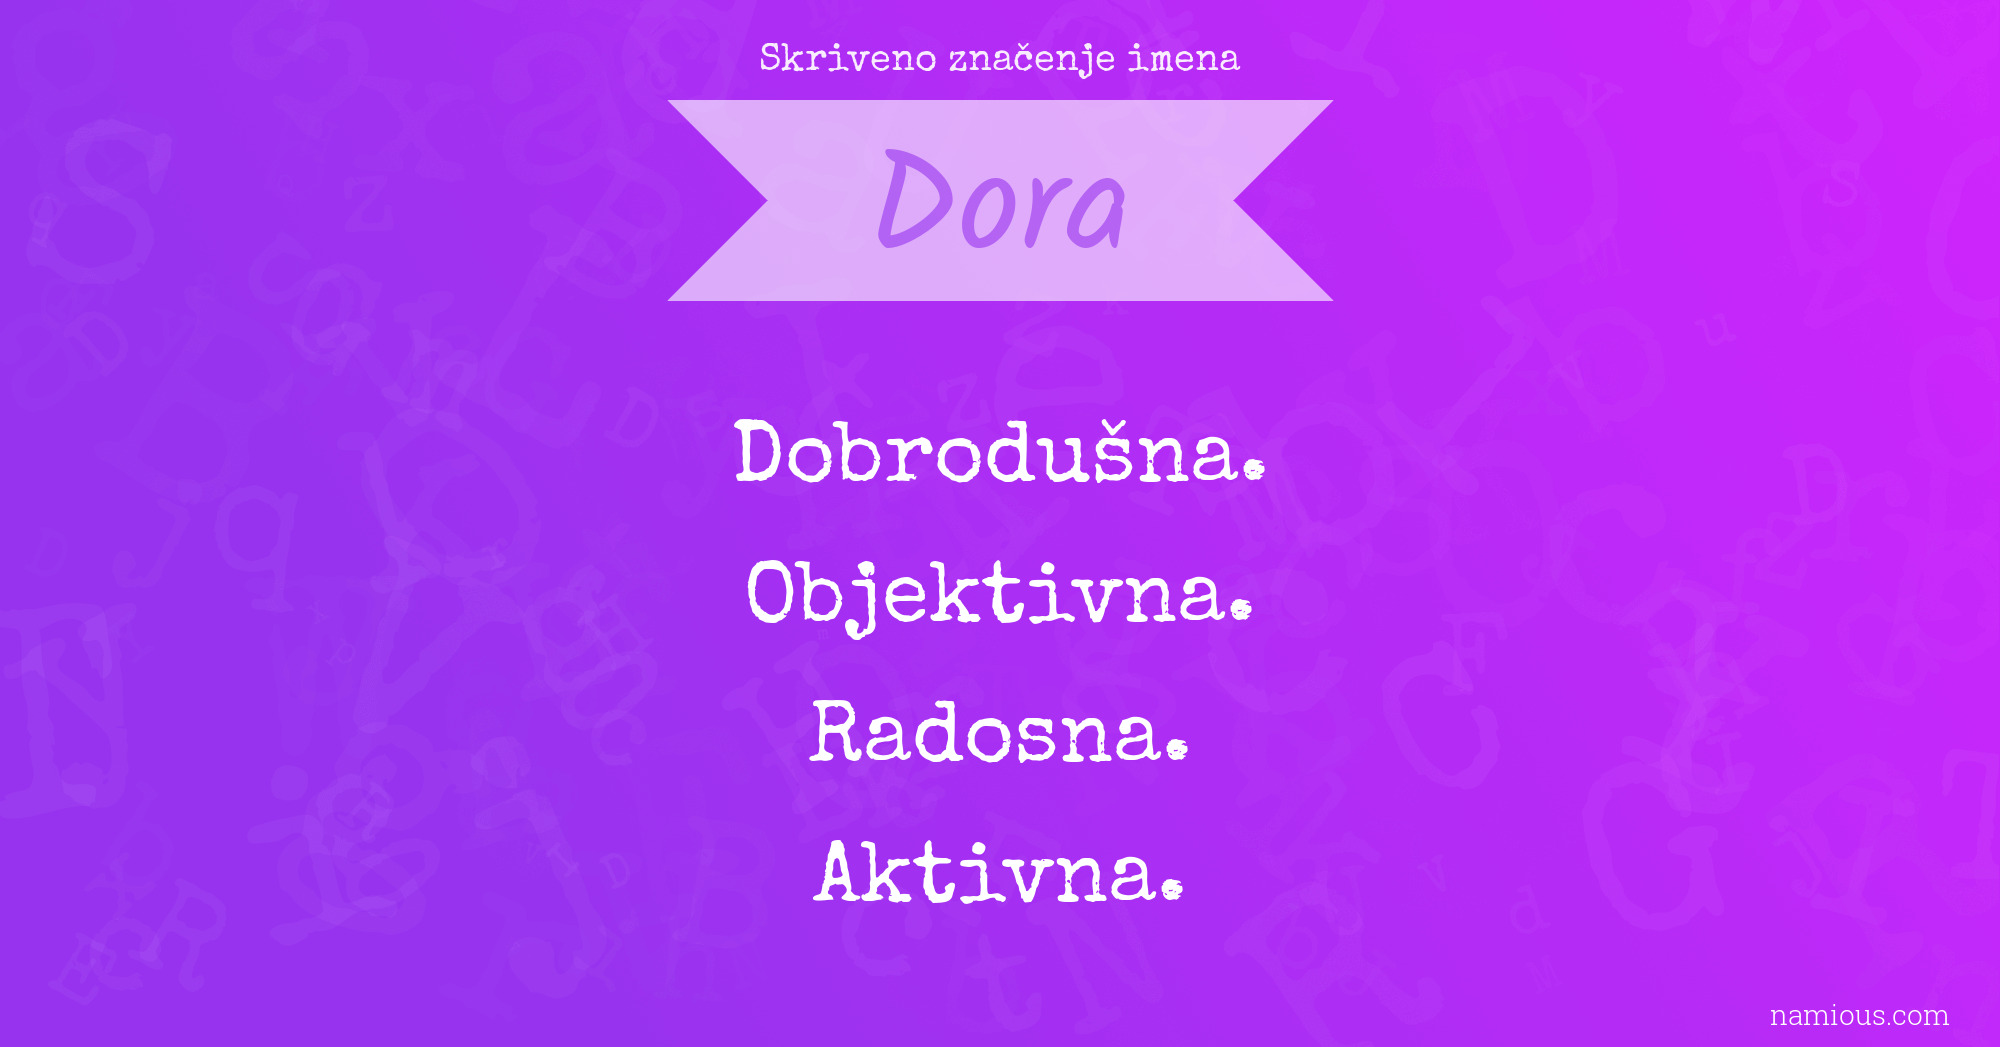 Skriveno značenje imena Dora | Namious